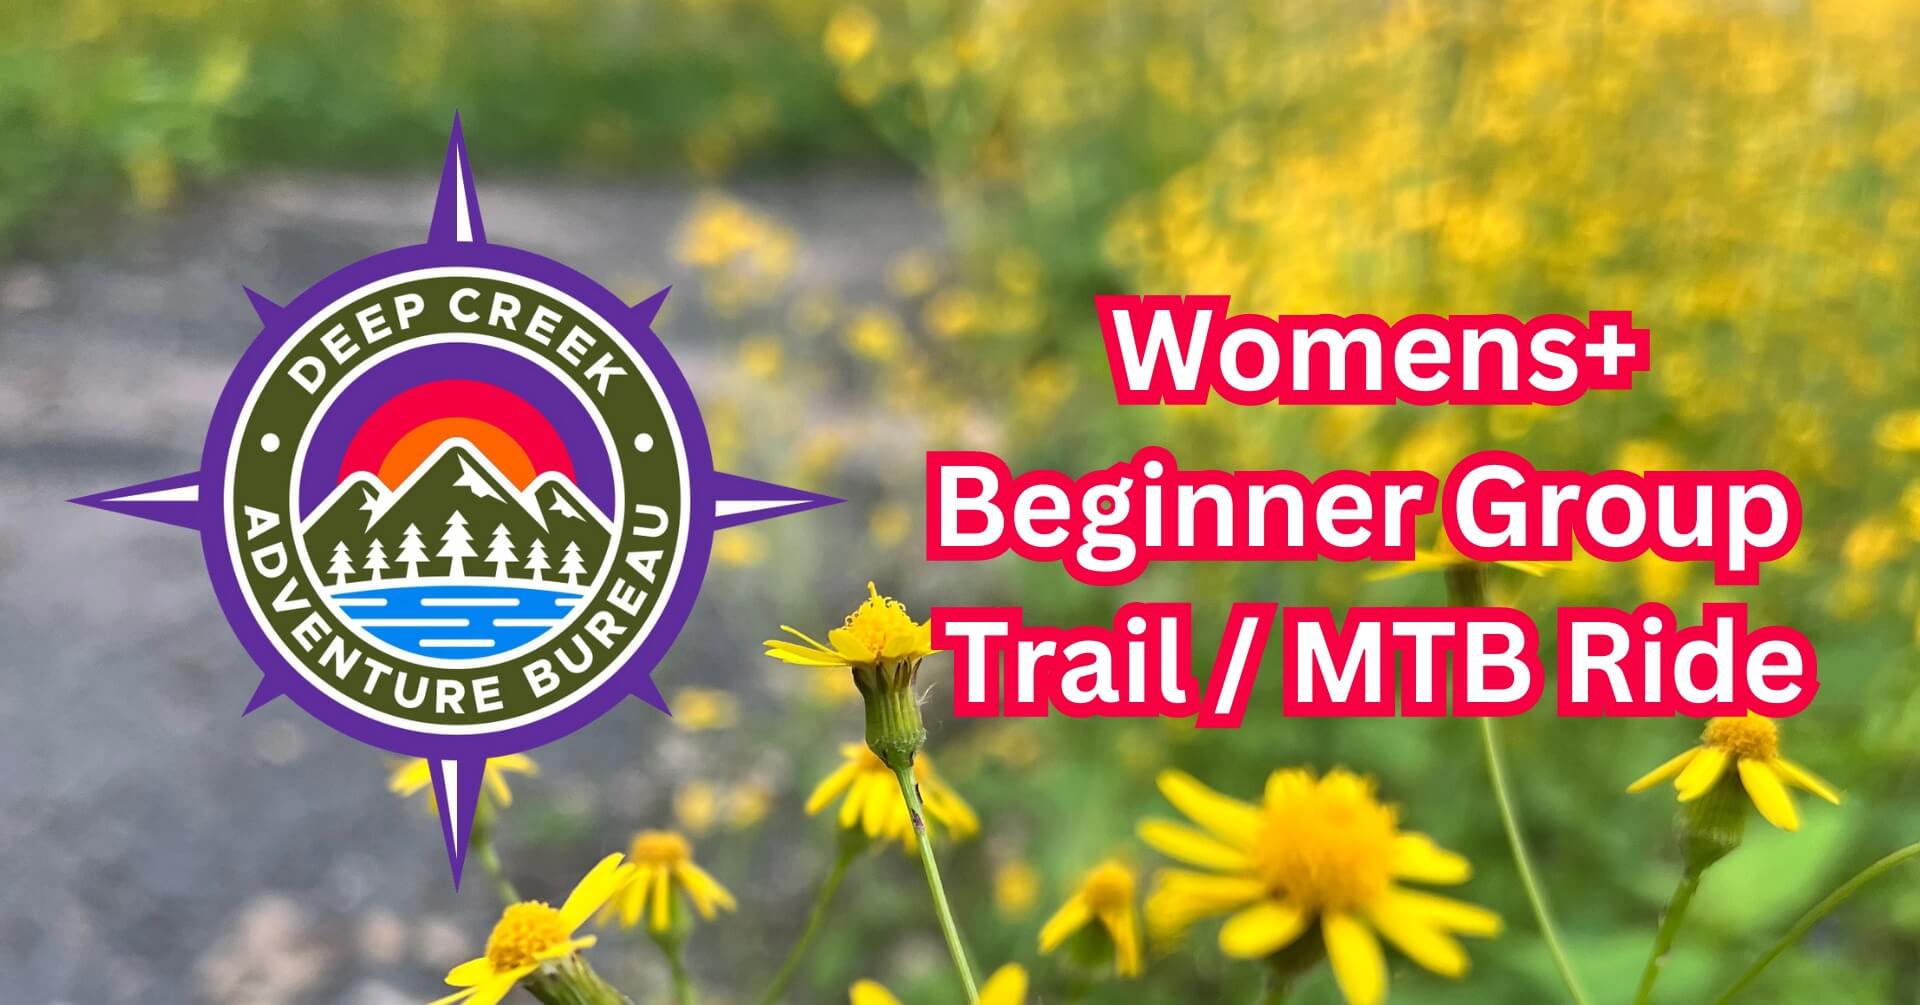 FREE Women's + Beginner Group Trail:Mountain Bike Ride at Deep Creek Lake, MD